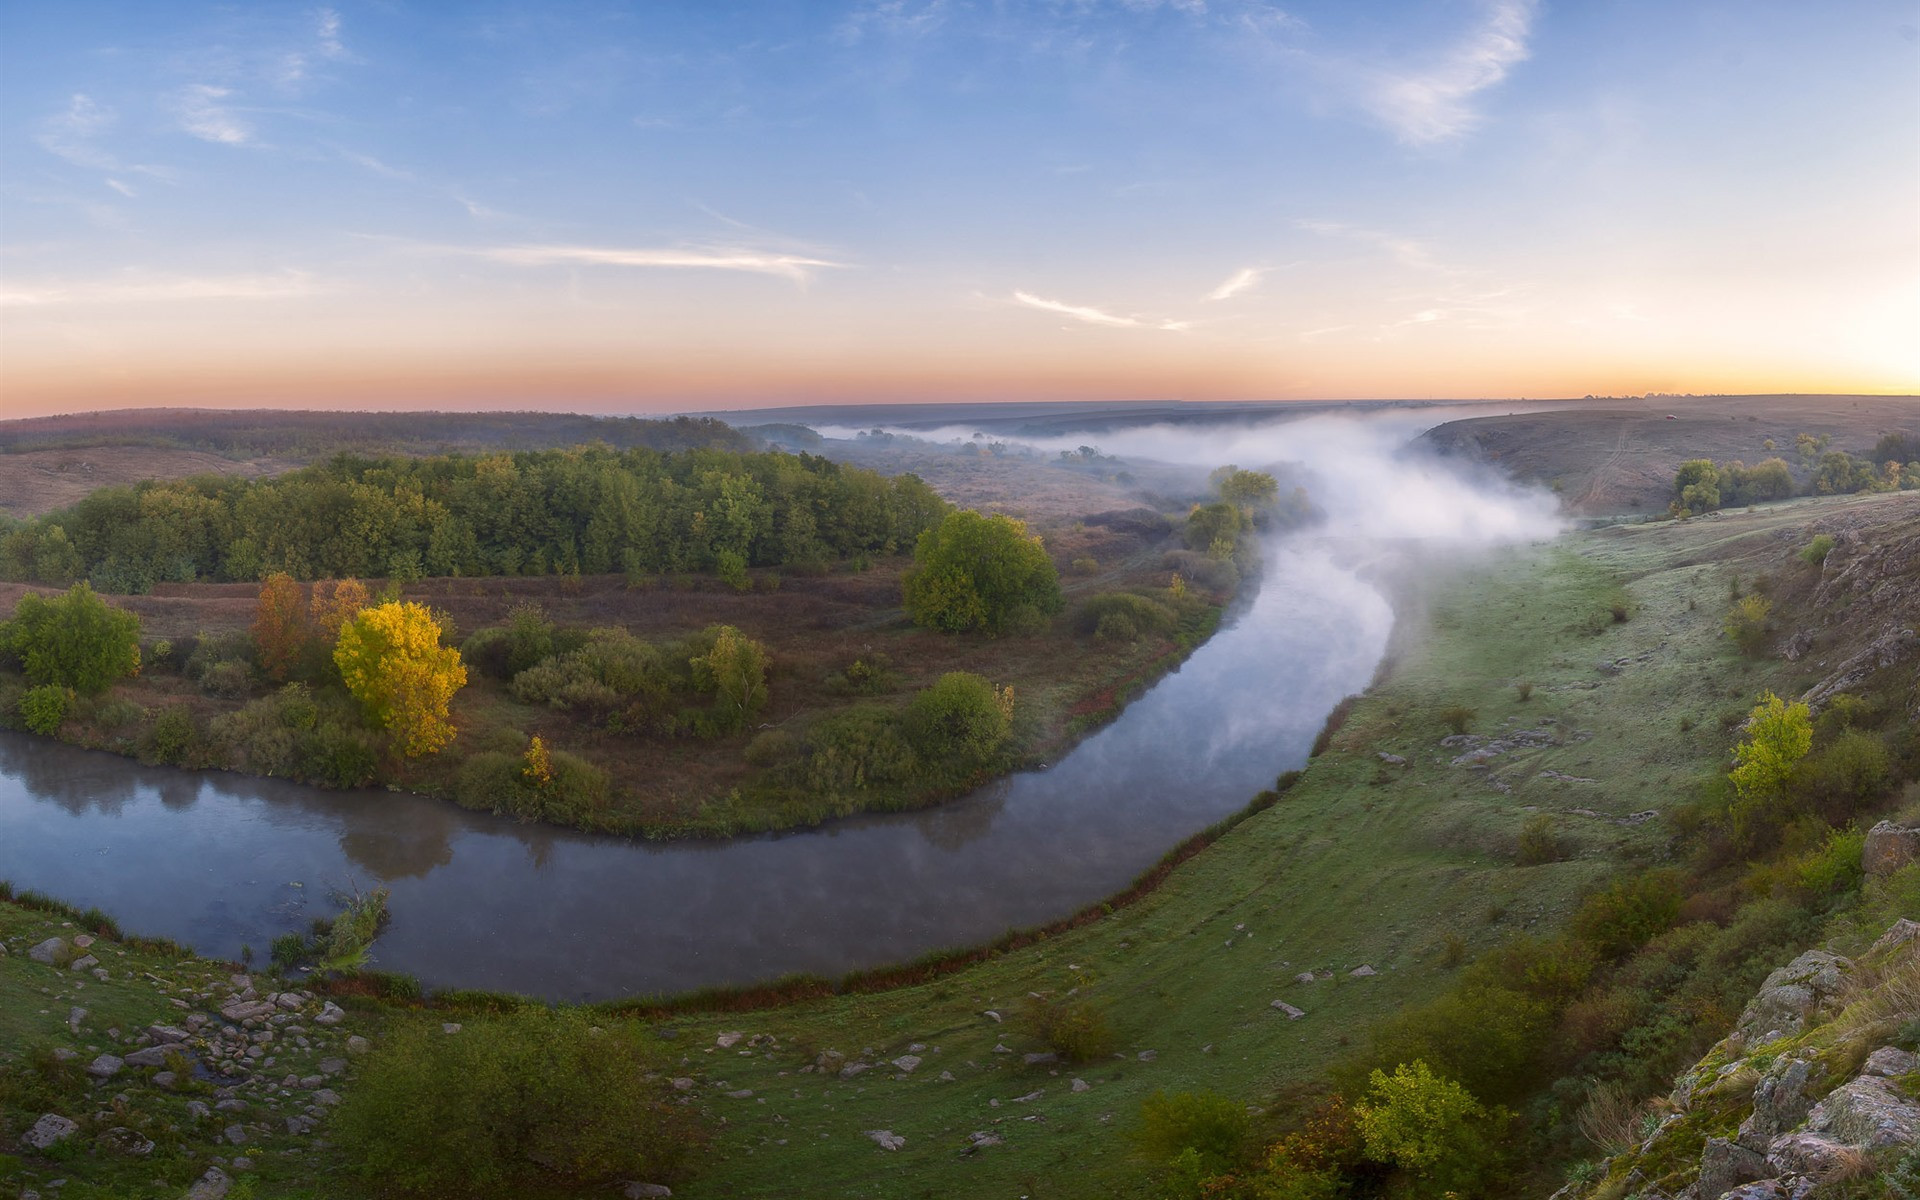 The Kalmius River in Ukraine